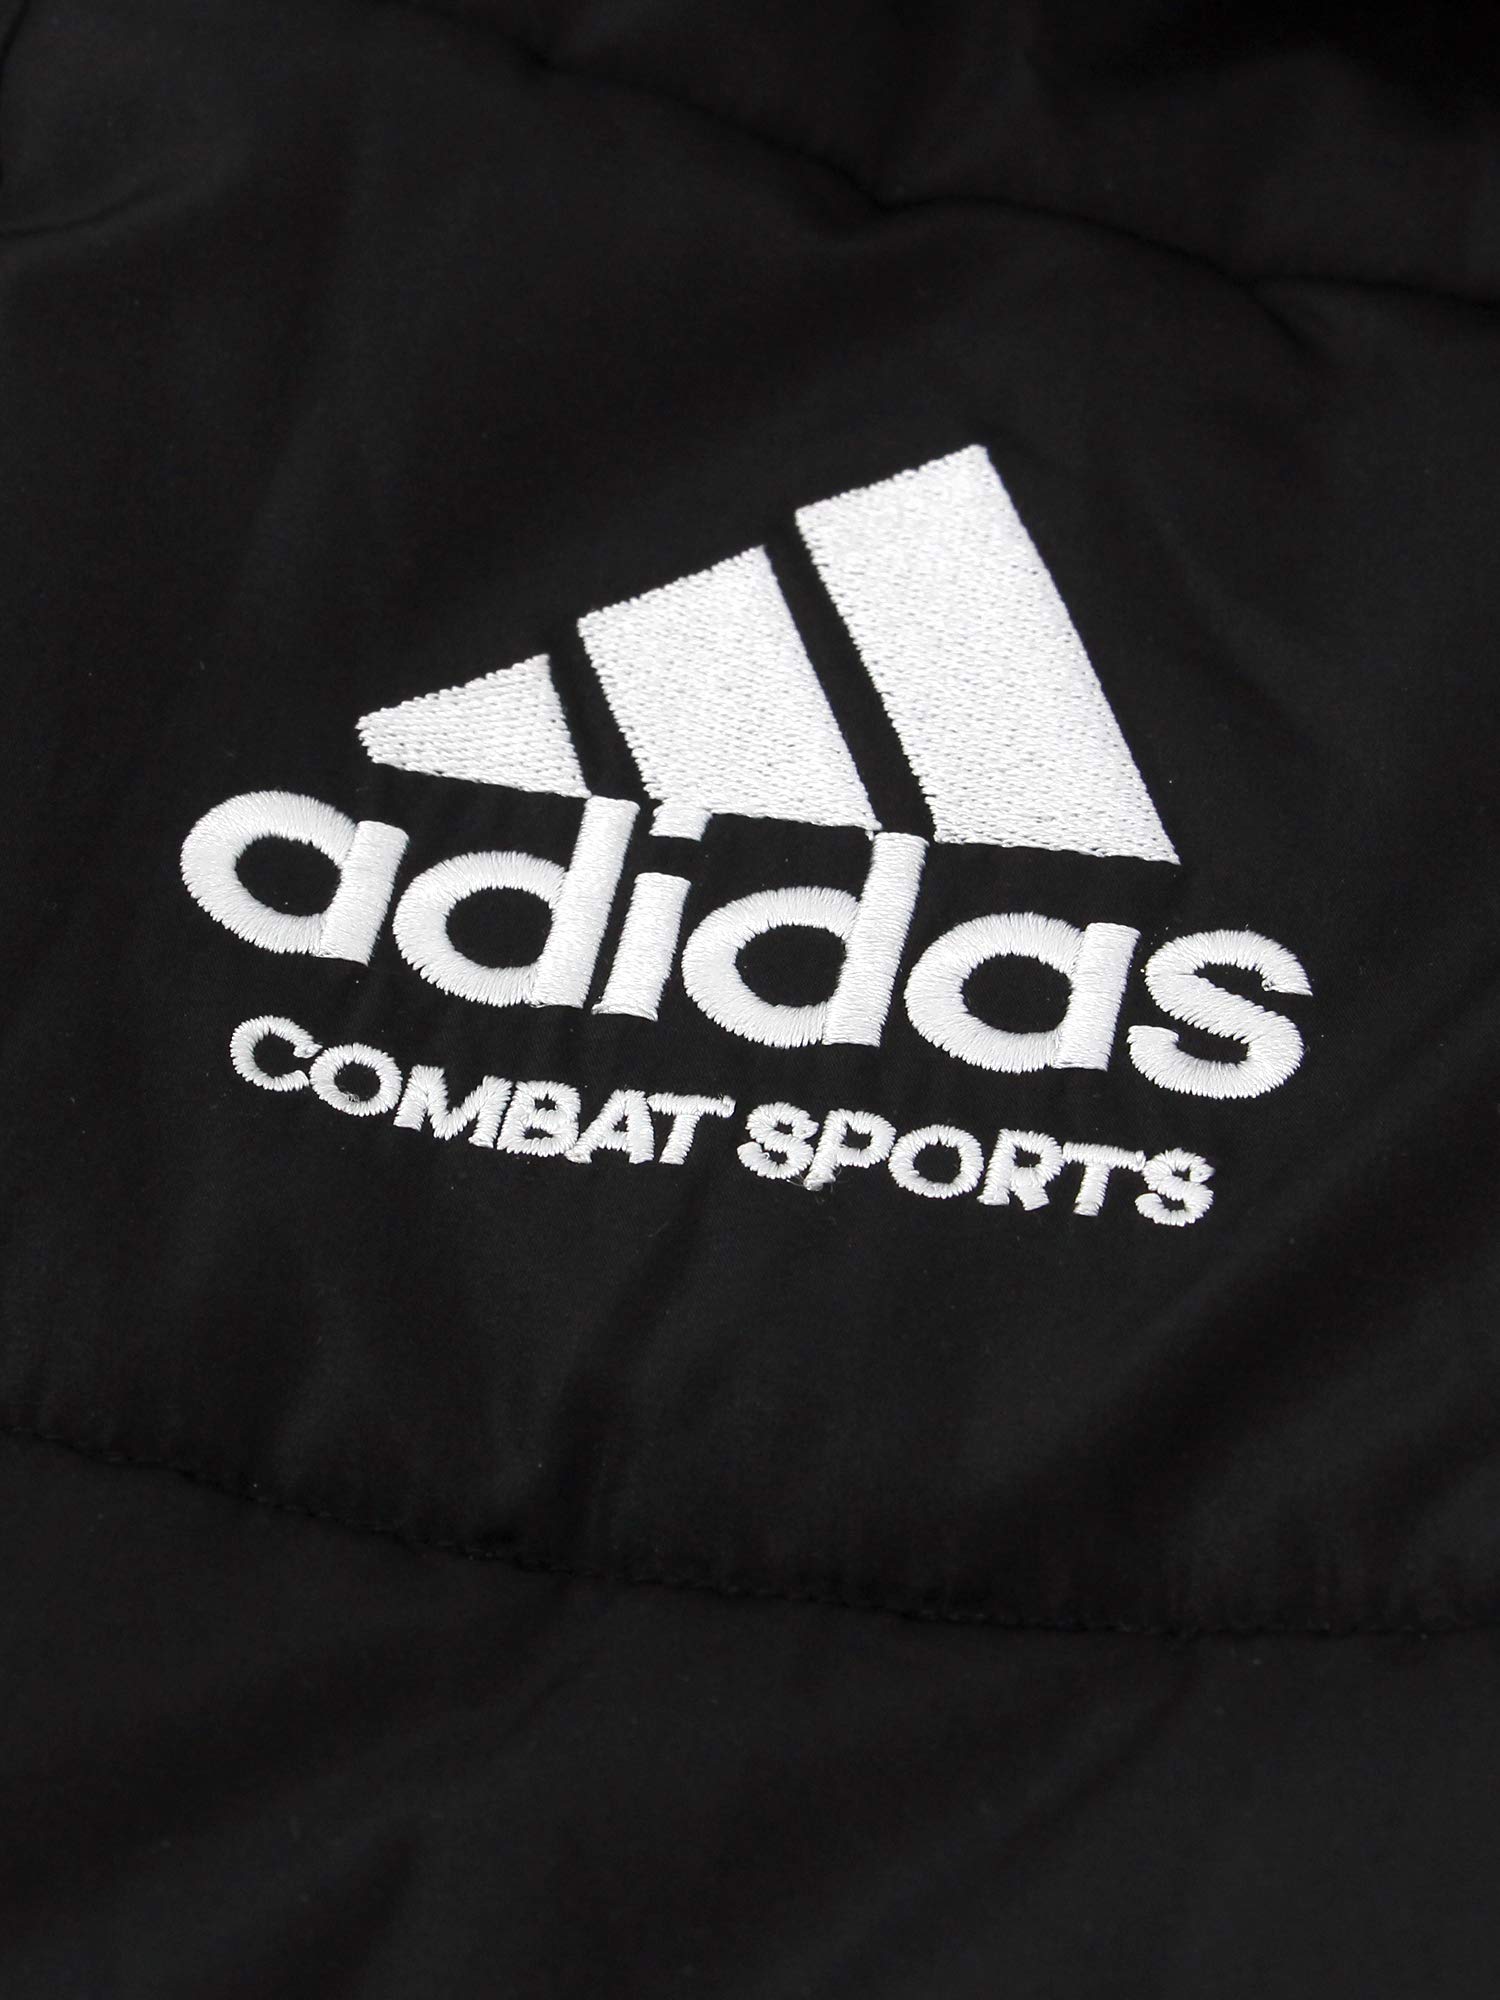 adidas Combat Sports Winter Long Parka Coat - Black